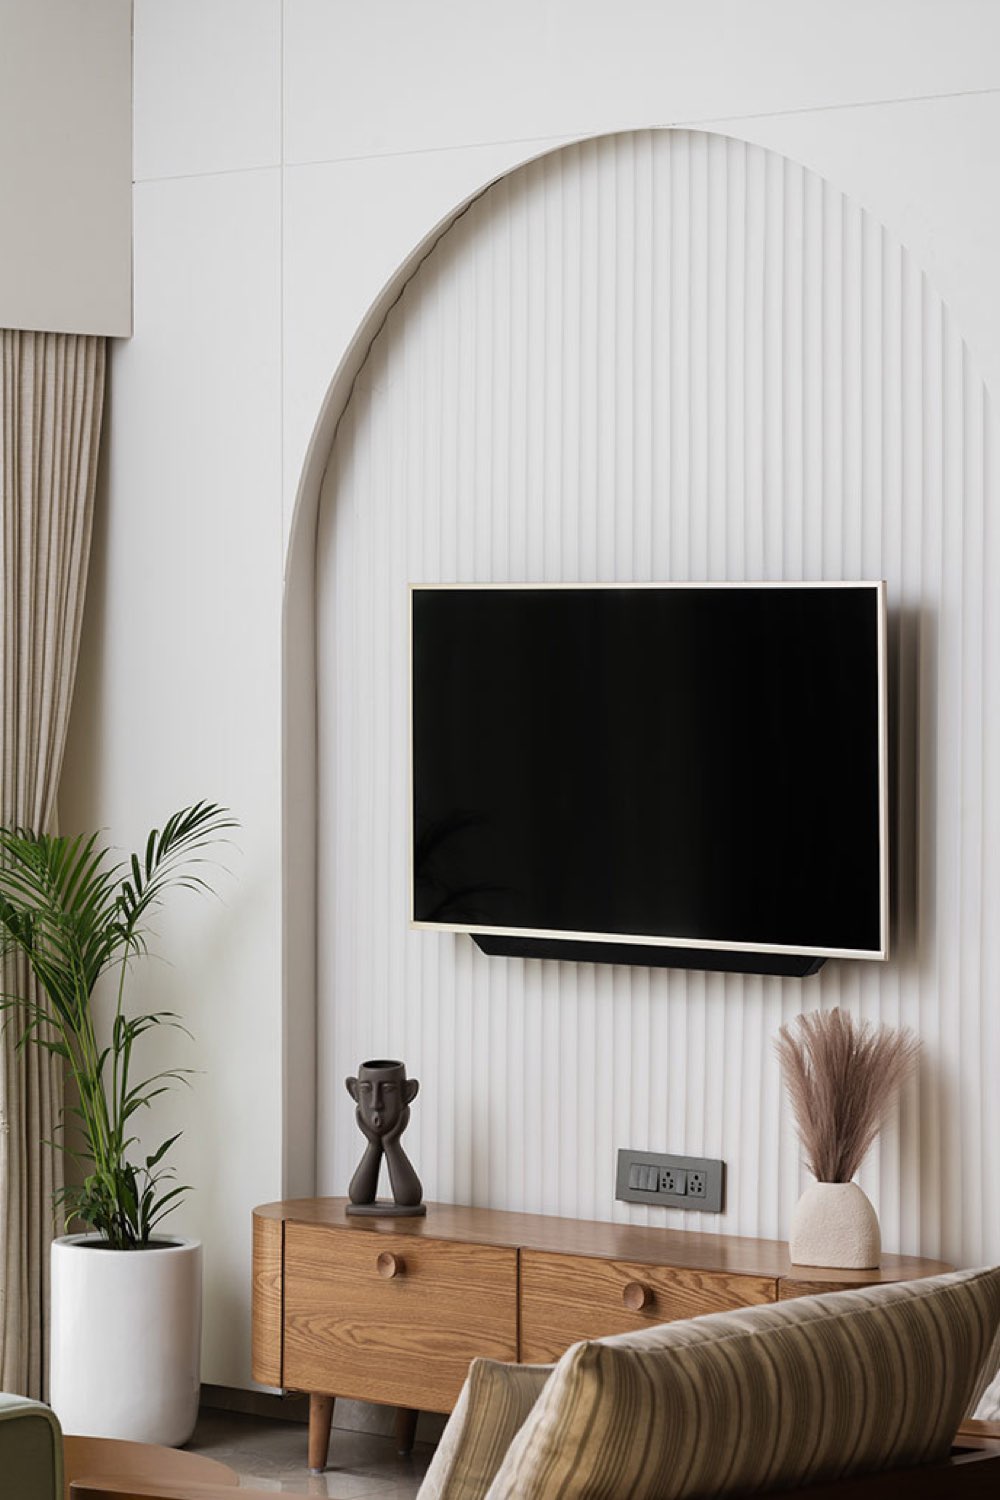 appartement lumineux moderne decor nature mur télé salon arche texture meuble en bois élégant chic